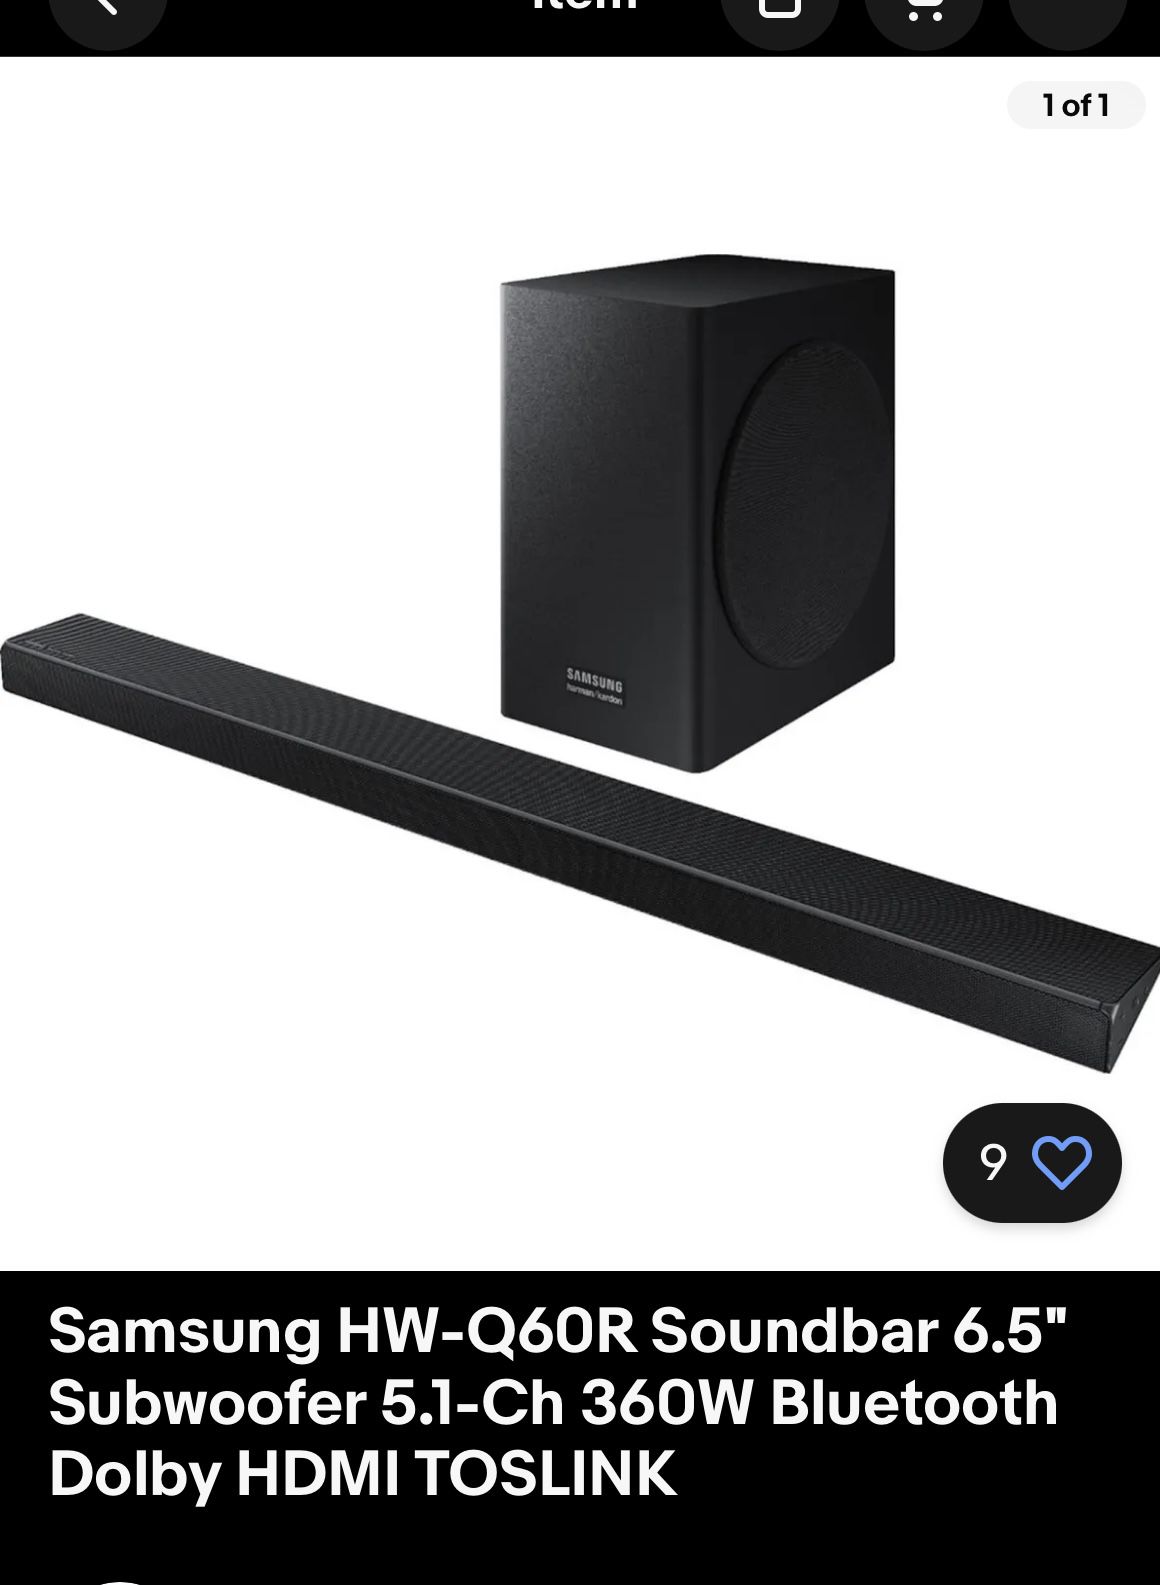 Samsung Soundbar And Subwoofer 5.1